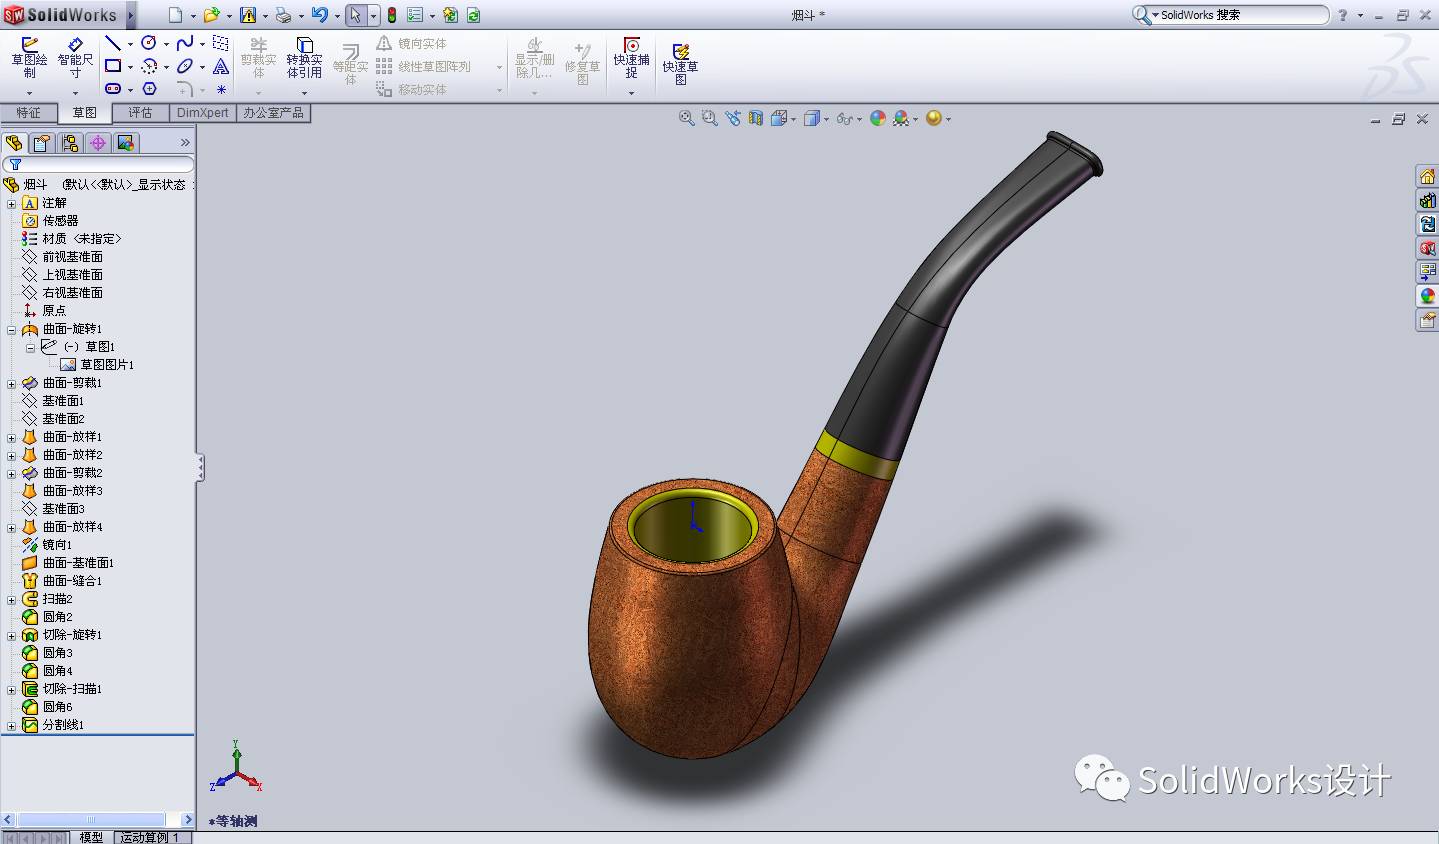 SolidWorks曲面建模 ---烟斗的设计过程